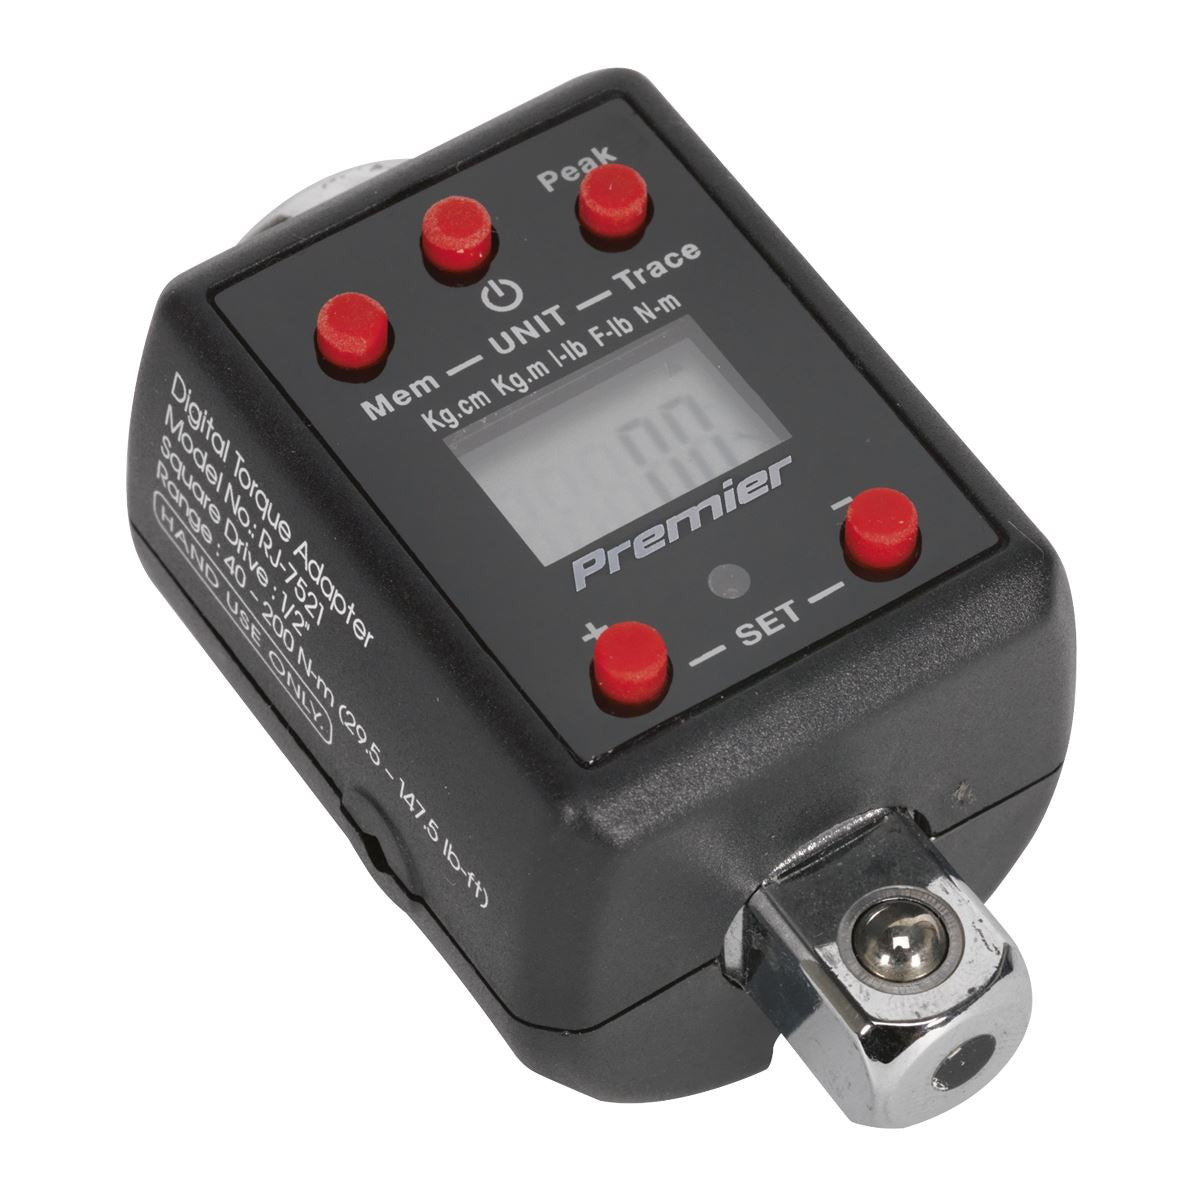 Sealey Premier Torque Adaptor Digital 1/2"Sq Drive 40-200Nm(29.5-147.5lb.ft)